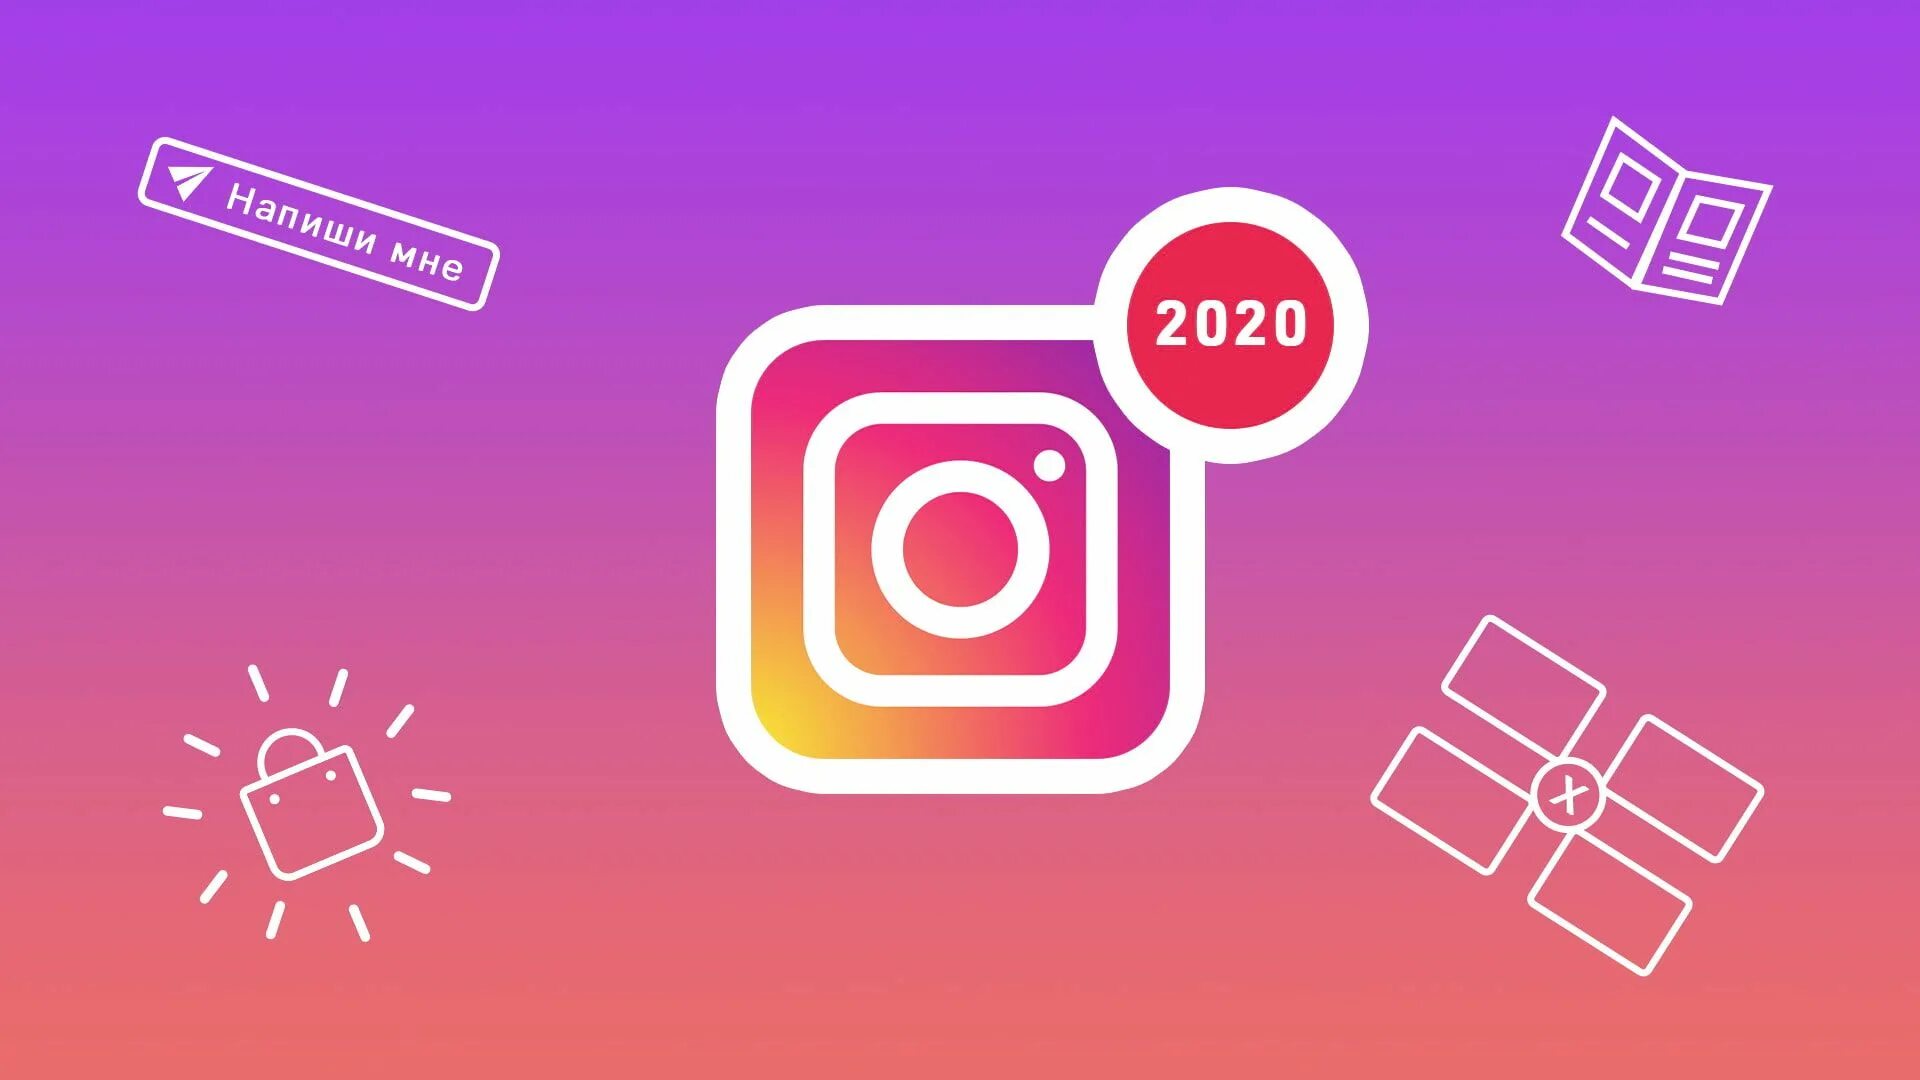 Обновление инстаграмм. Обновление Инстаграм. Instagram 2020. Картинка Инстаграм. Формат Инстаграм.